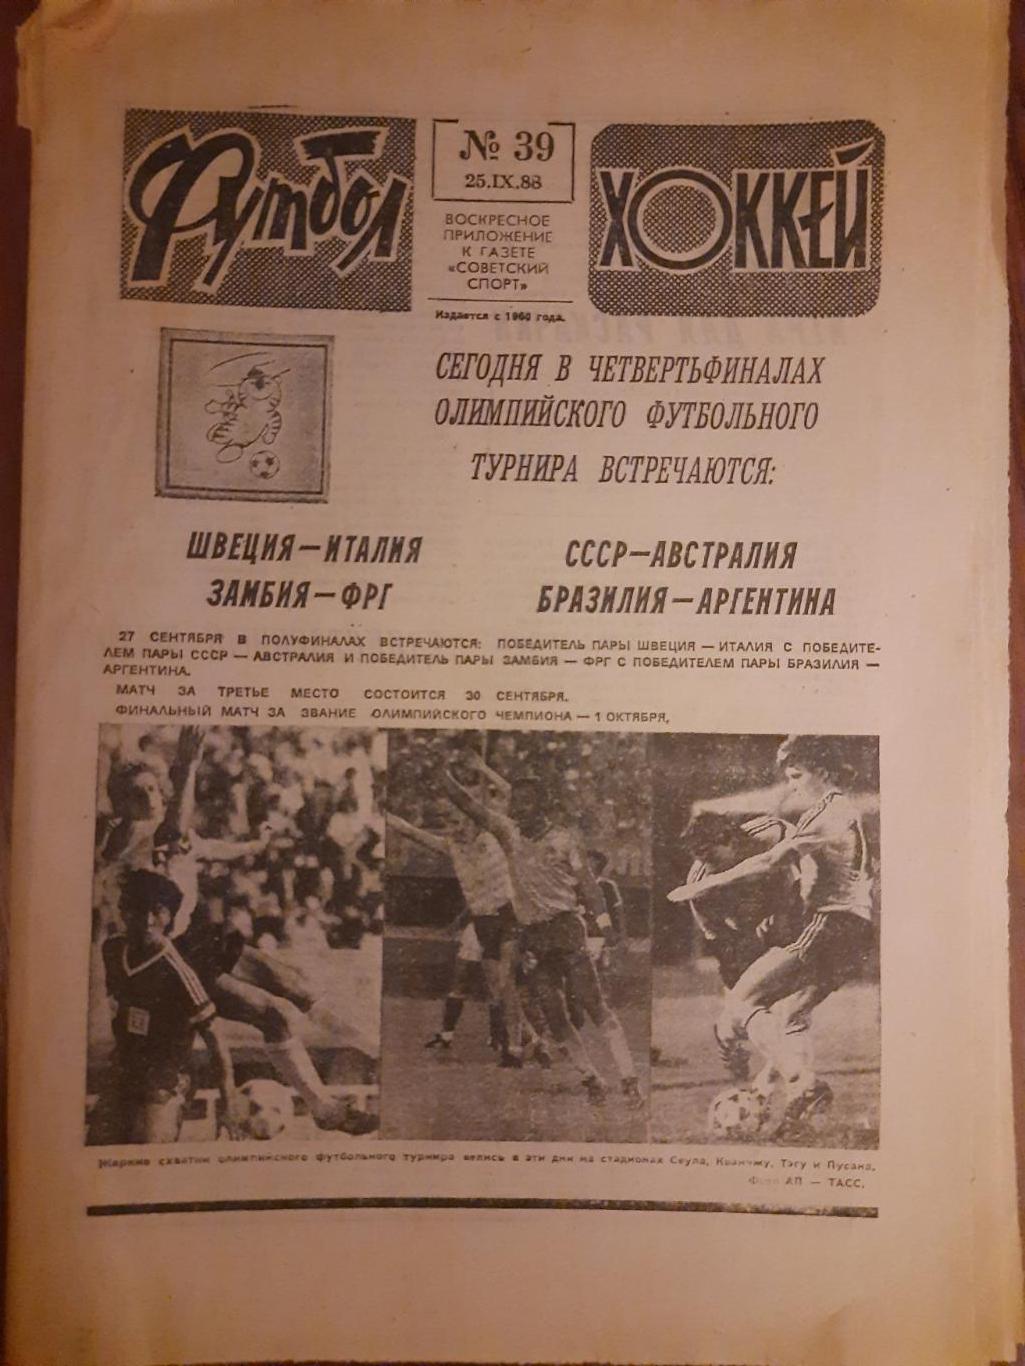 еженедельник футбол-хоккей #39,1988